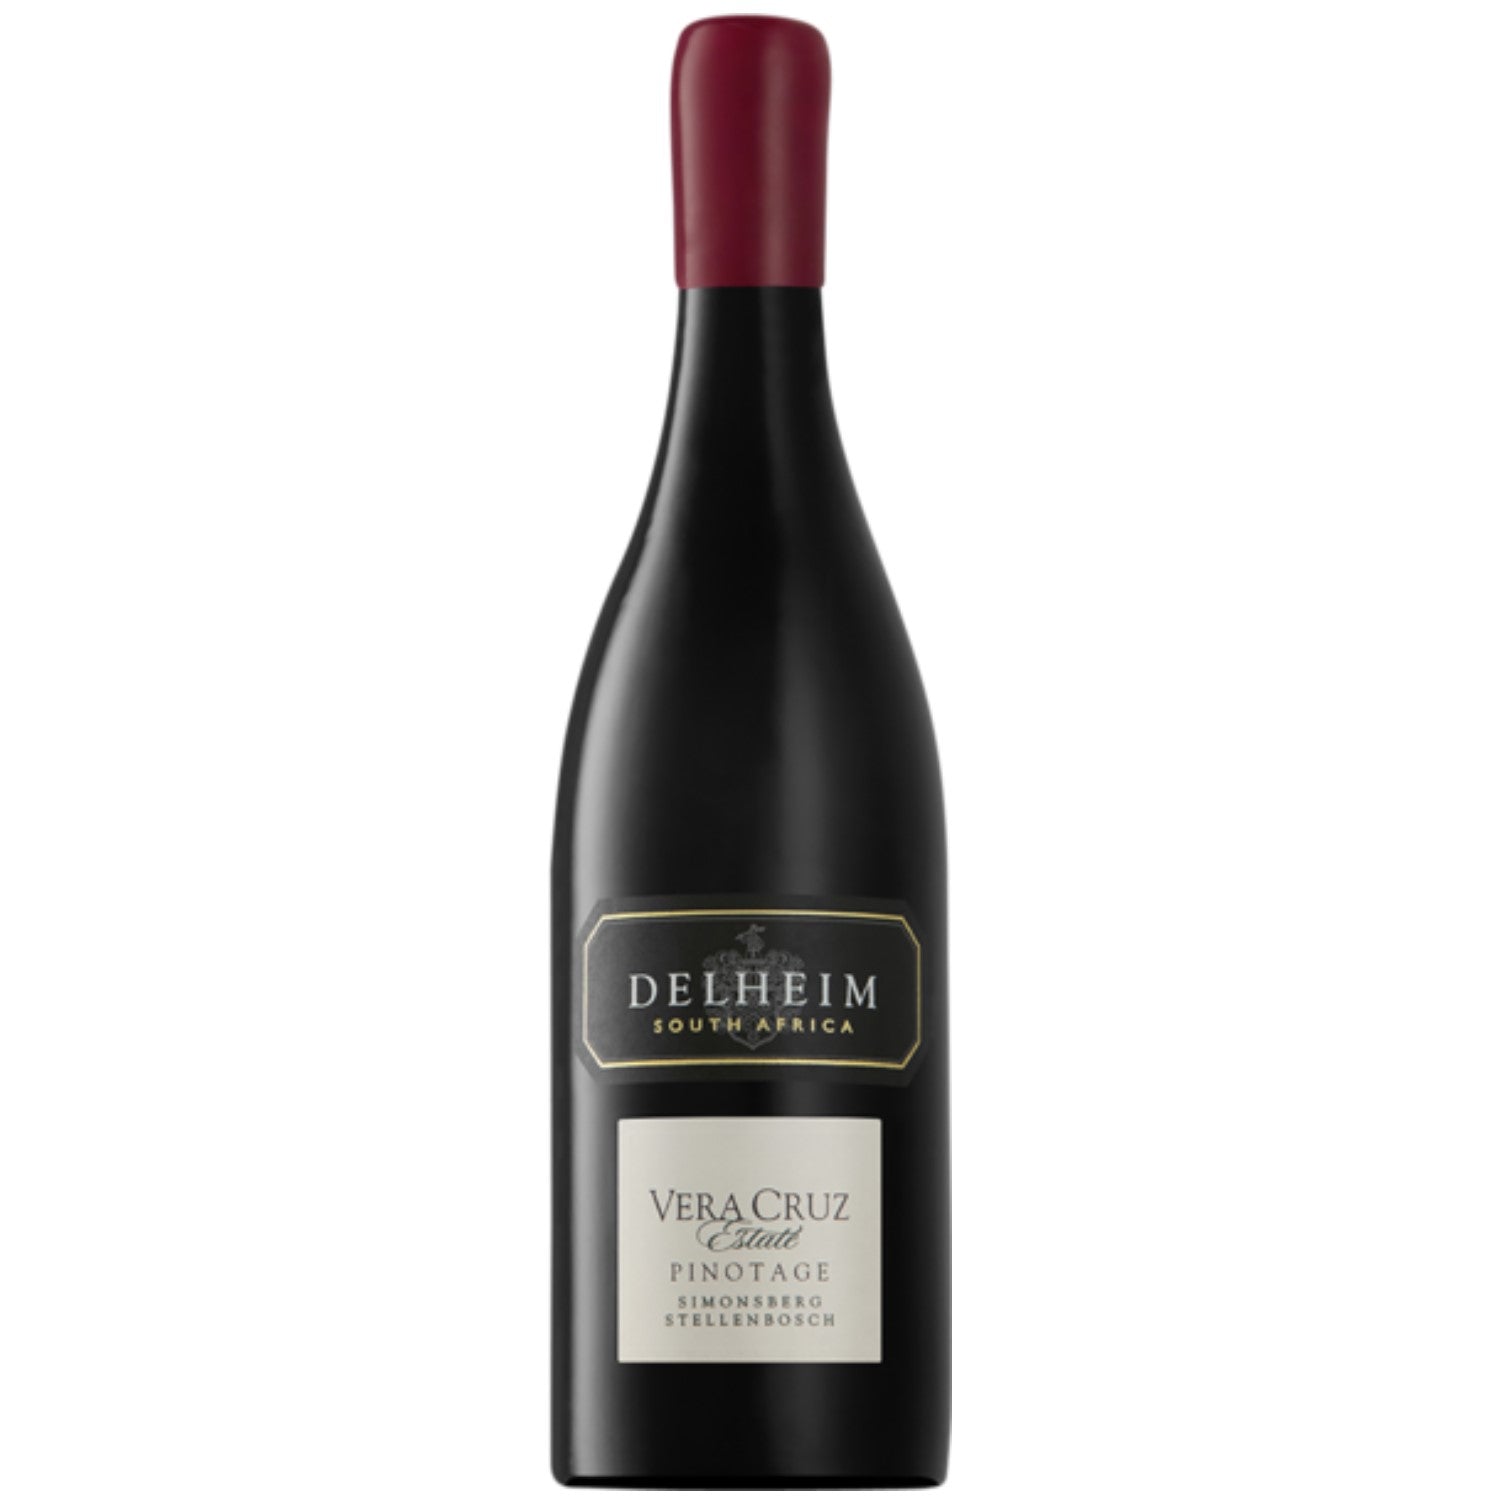 Delheim Vera Cruz Pinotage Simonsberg-Stellenbosch Rotwein Wein trocken Südafrika (12 x 0.75l) - Versanel -